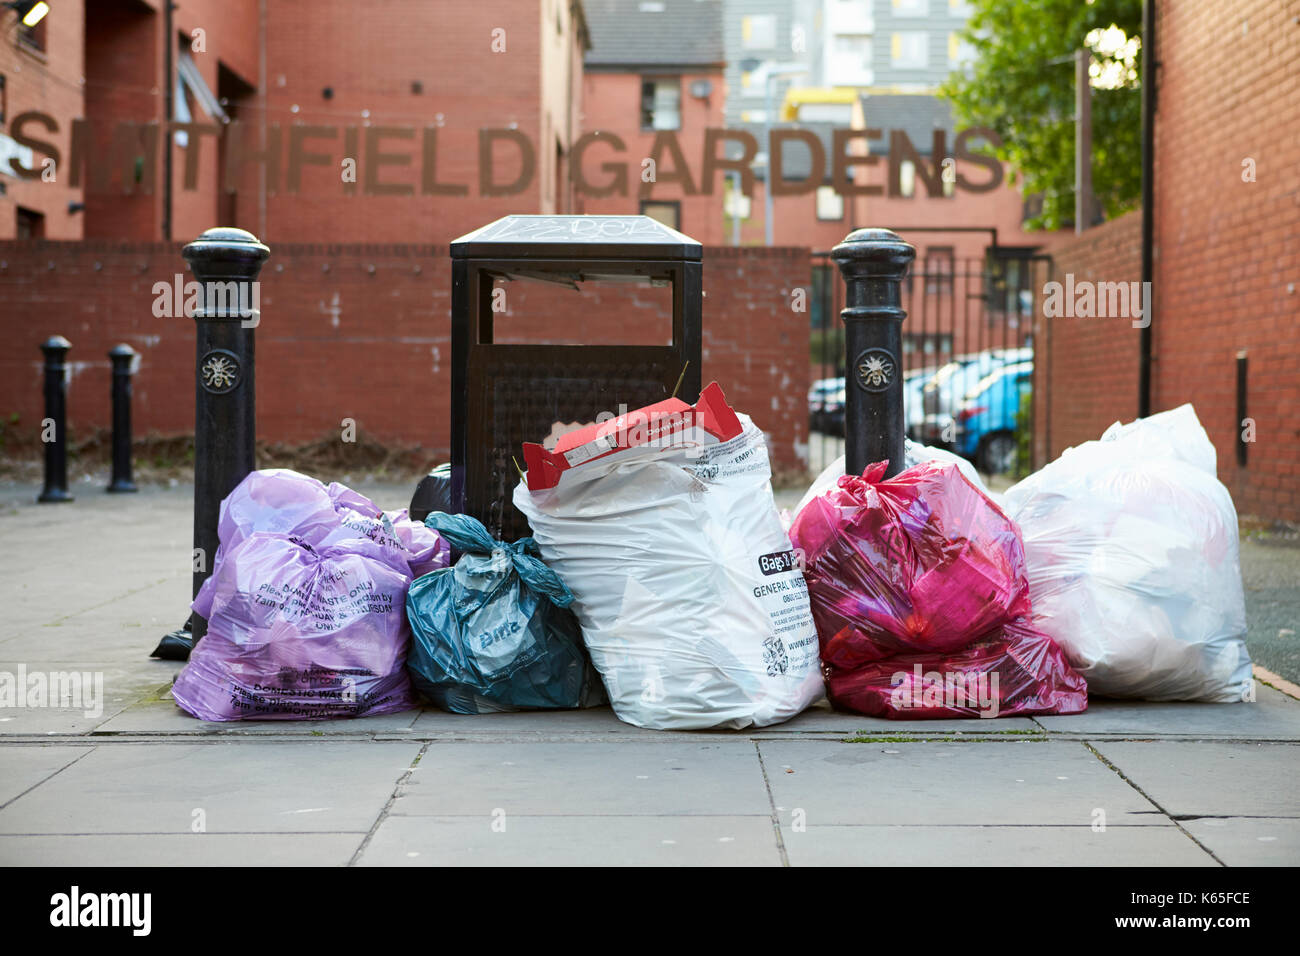 Manchester, Regno Unito - 10 Maggio 2017: sacchi di rifiuti ammucchiati accanto al vassoio sul Manchester Street Foto Stock